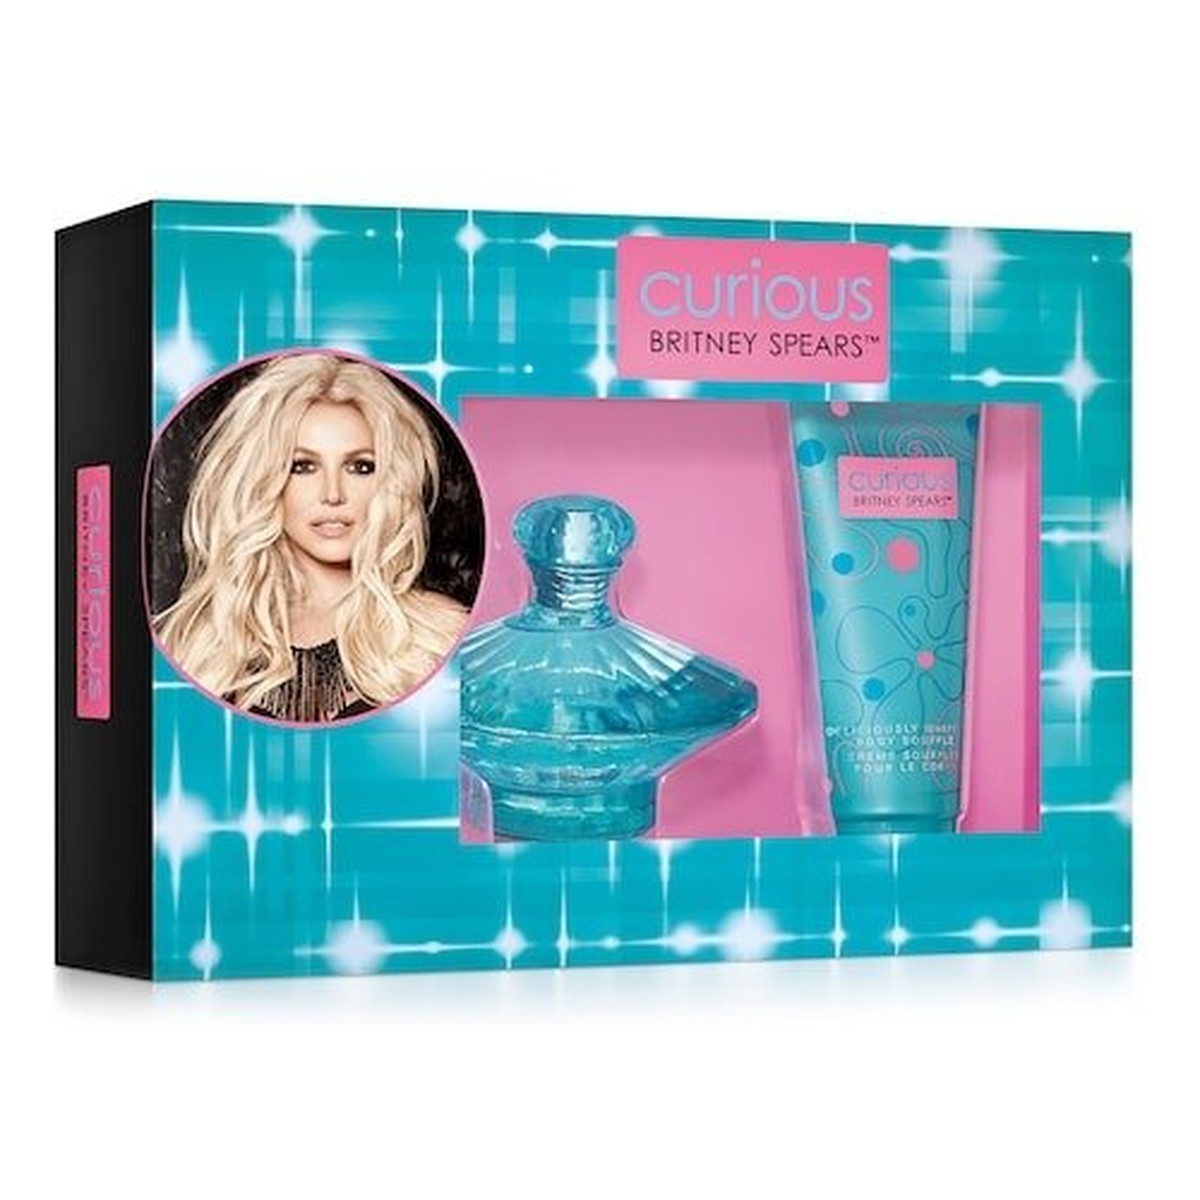 Britney Spears Curious zestaw (woda perfumowana 100ml + balsam do ciała 100ml)